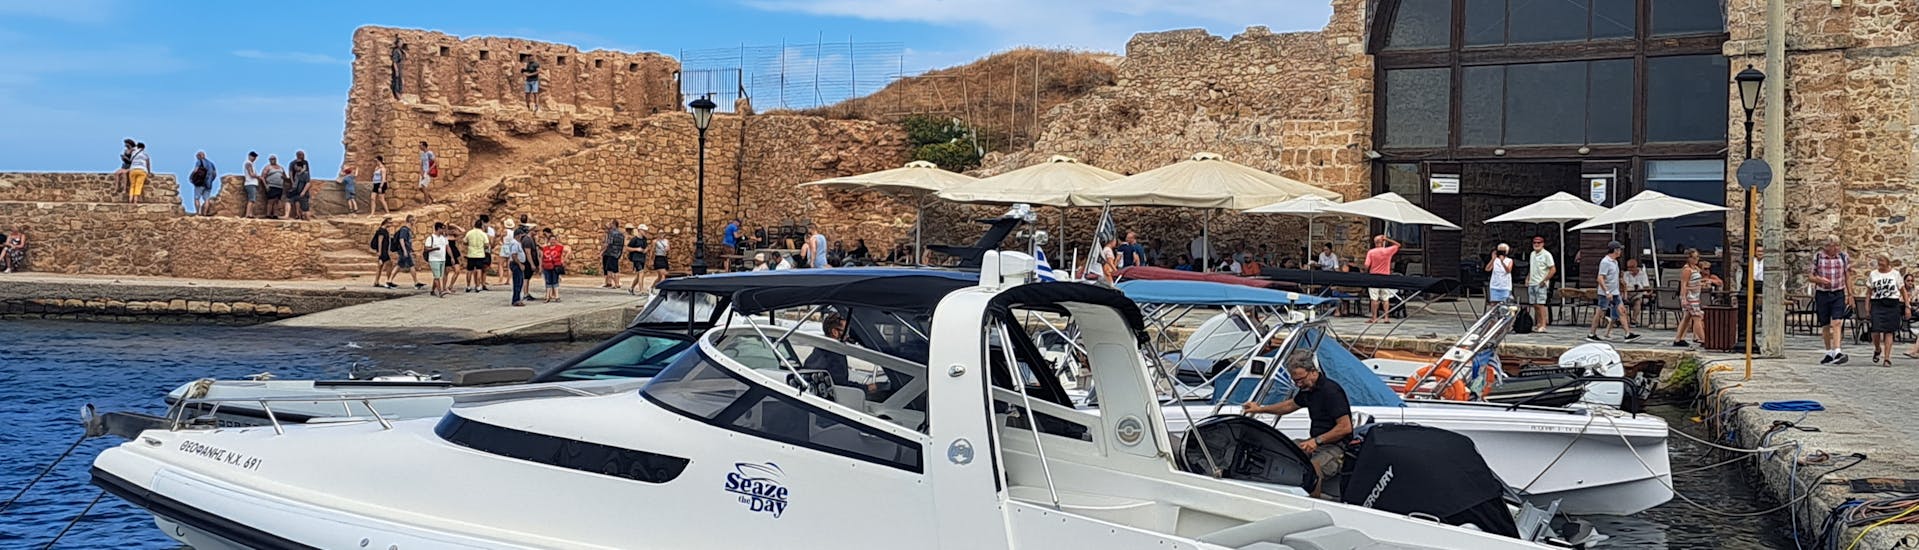 Bild eines der RIB-Boote, die SEAze The Day Crete für die Bootstour verwendet.